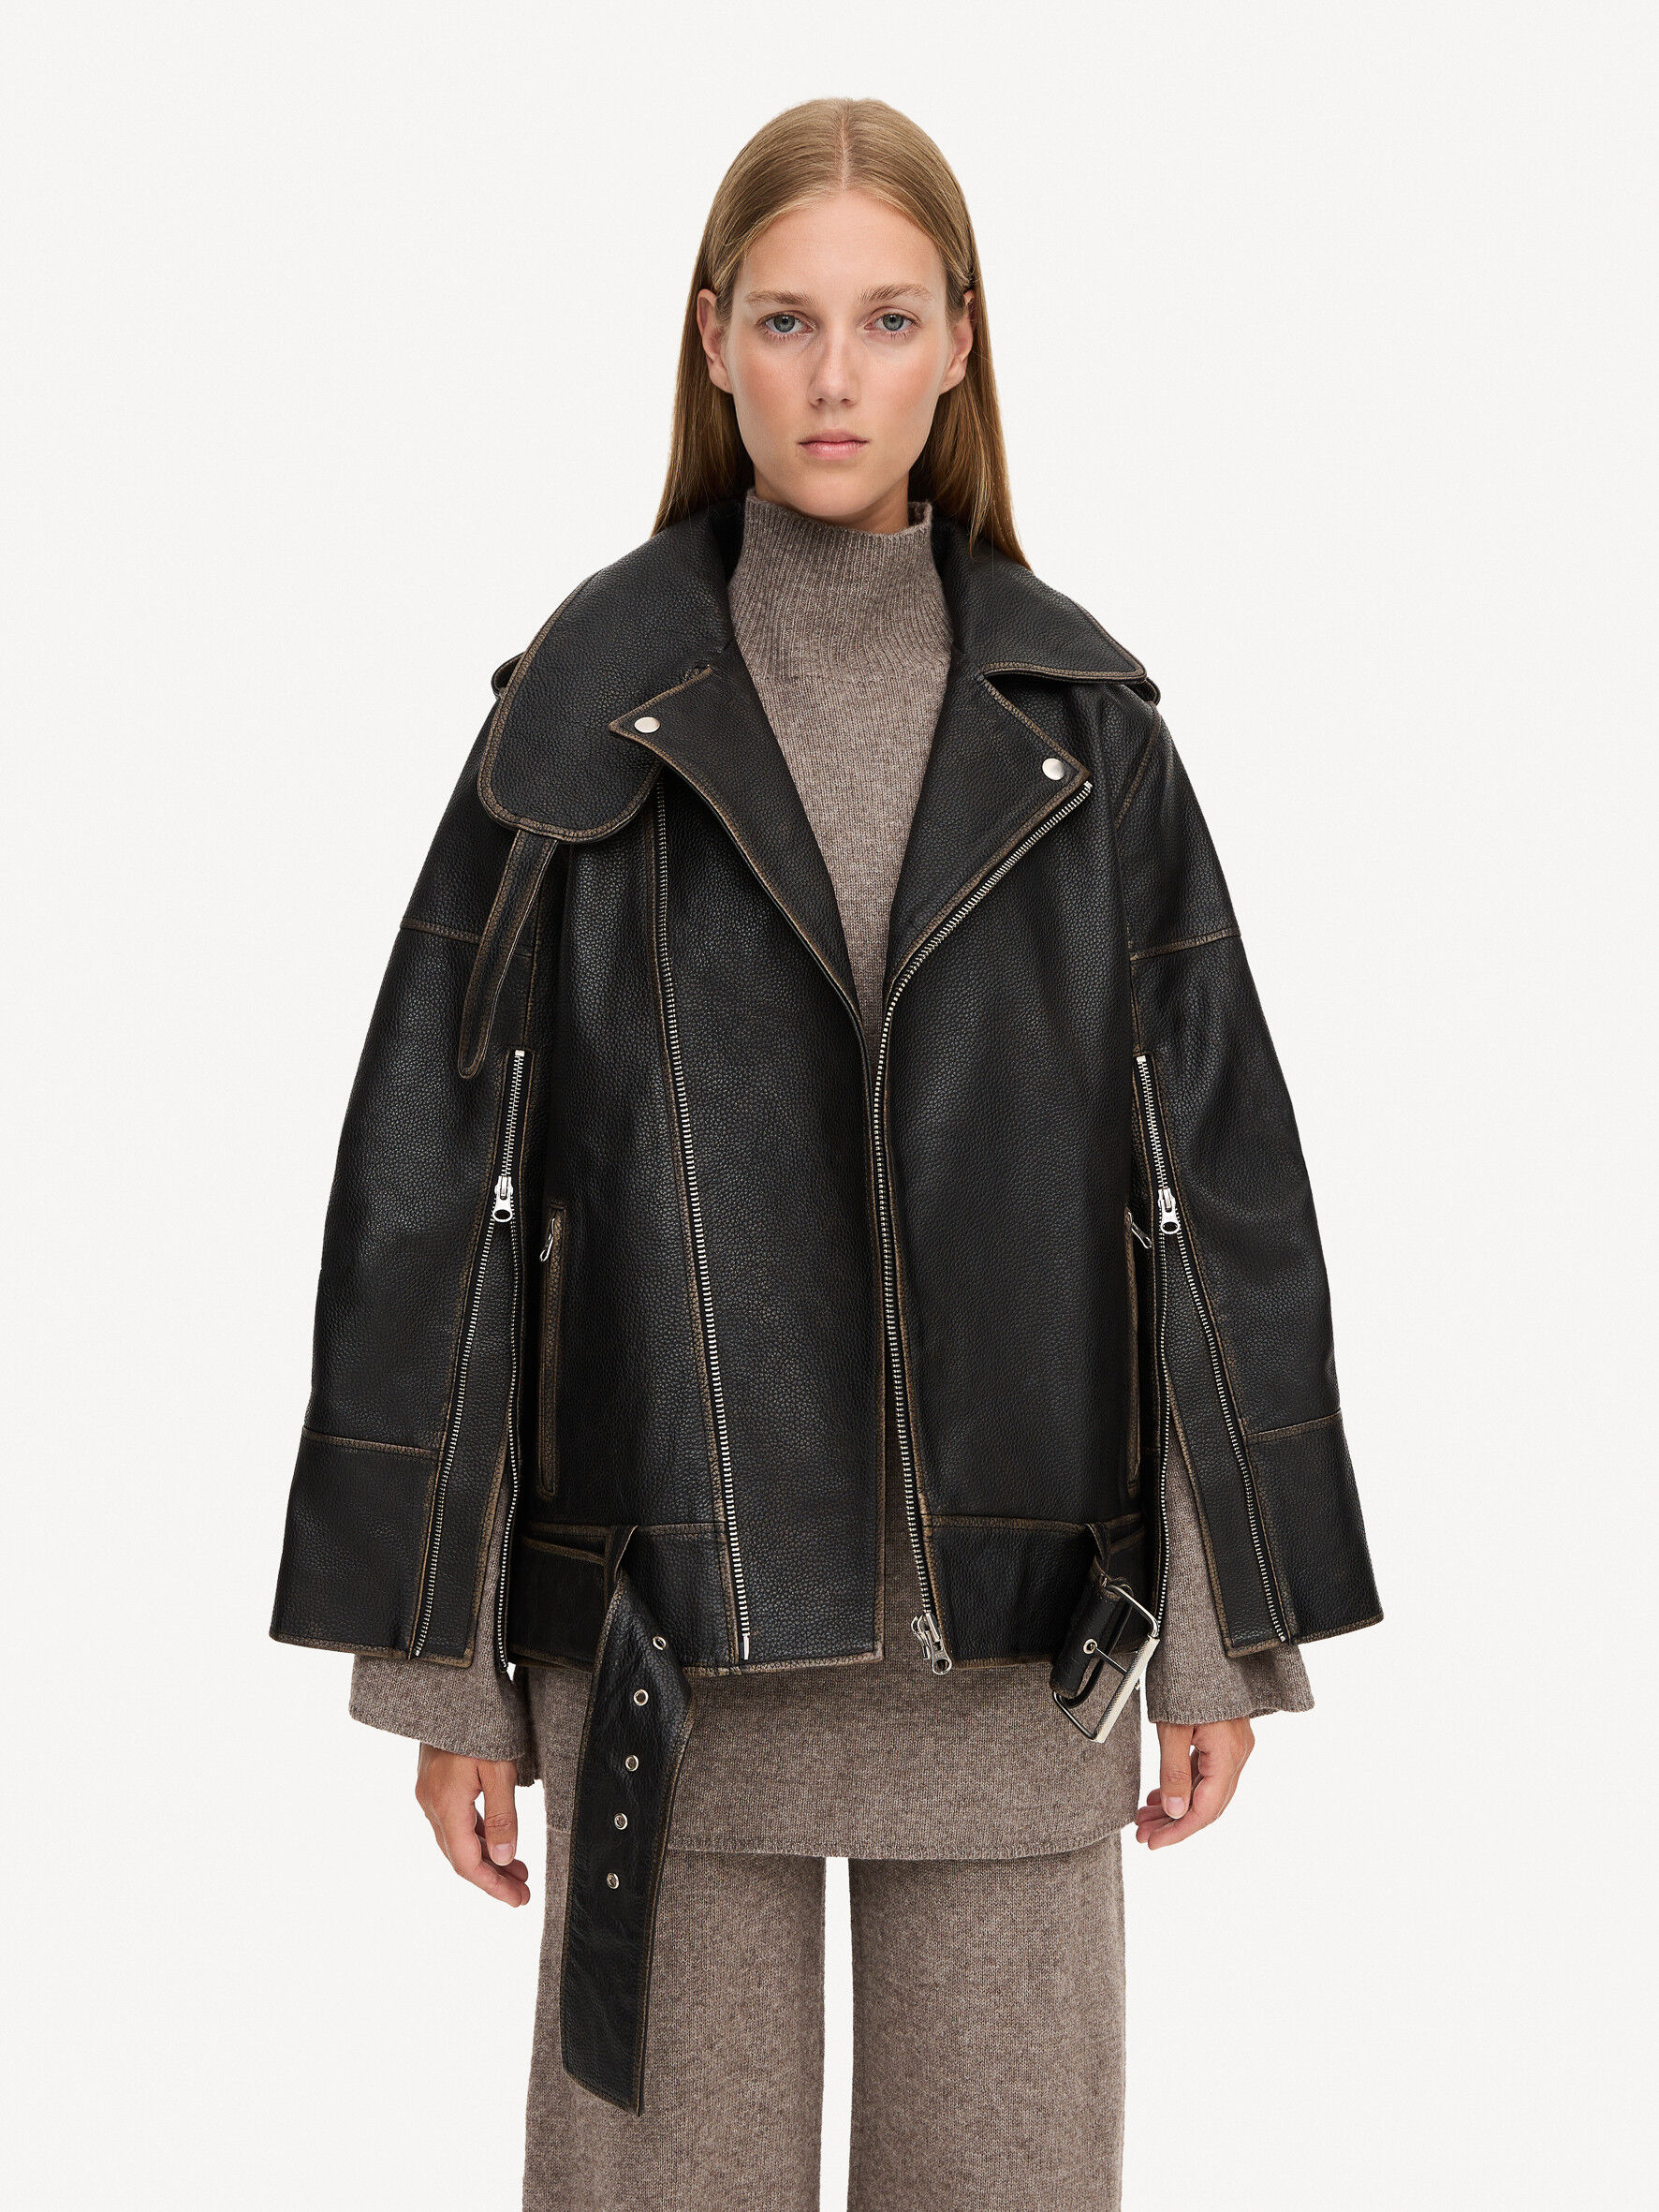 Beatrisse leather jacket - Buy Clothing online